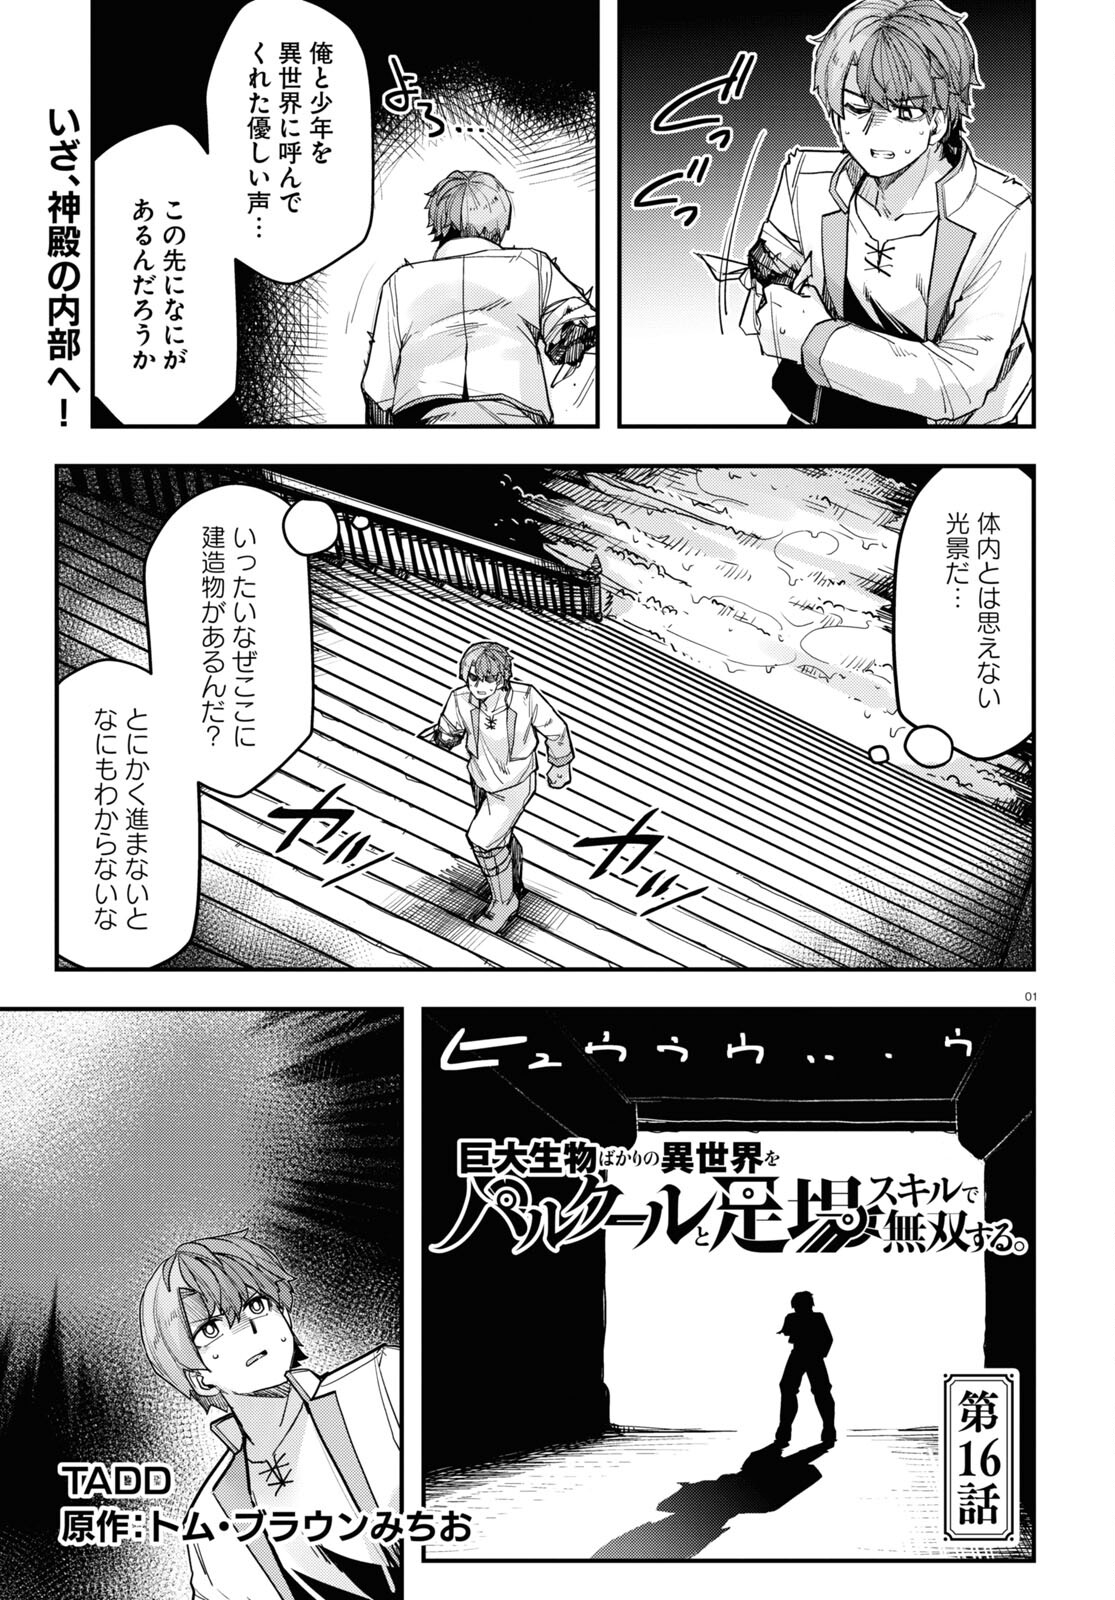 Kyodai Seibutsu Bakari no Isekai no Parkour to Ashiba Skill de Musou suru. - Chapter 16 - Page 1